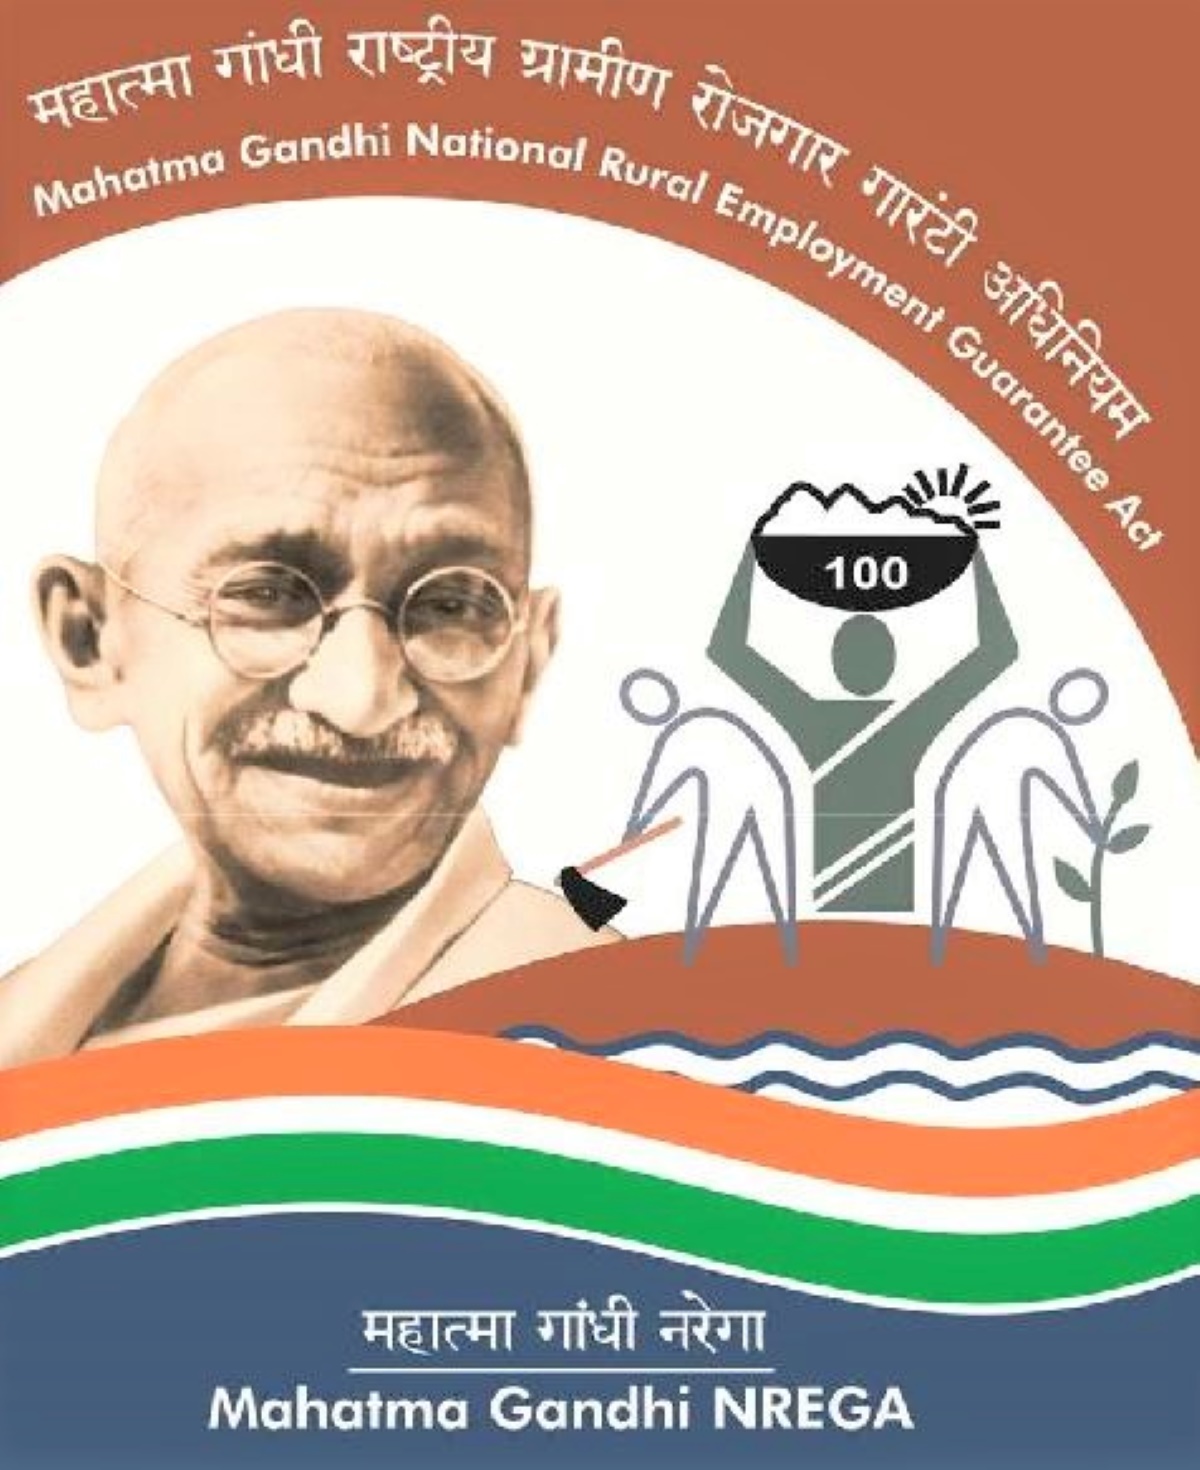 मुख्यमंत्री ने दी स्वीकृति – महात्मा गांधी नरेगा योजना के तहत संविदा पर भरे जाएंगे 2600 पद